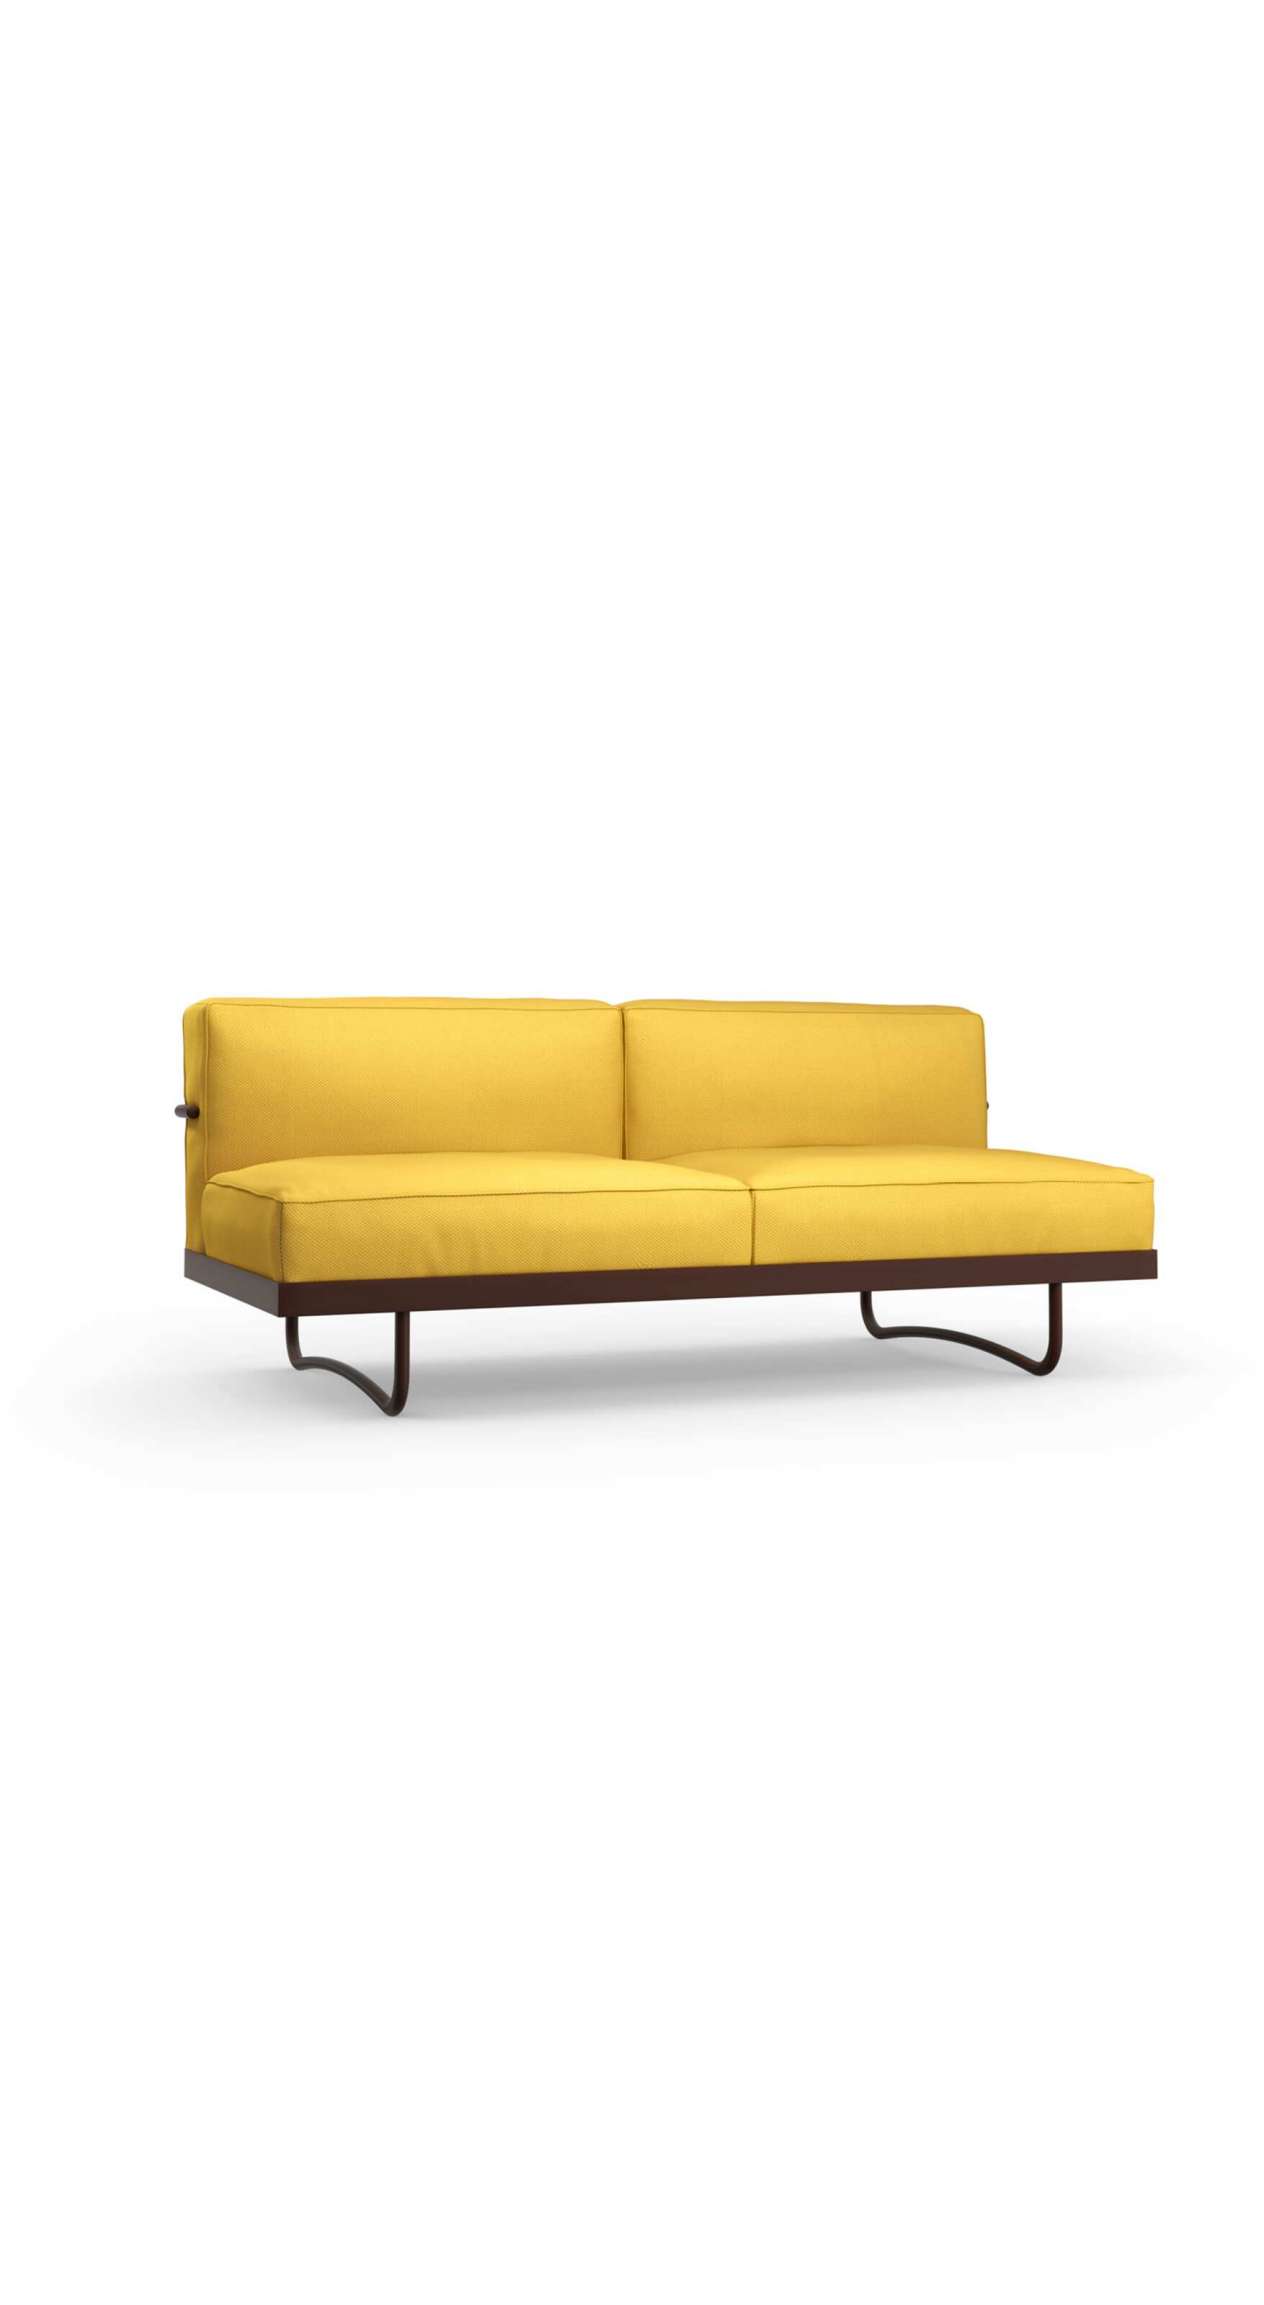 Sofa 5 - Pro, Le Corbusier, Pierre Jeanneret, Charlotte Perriand | Cassina